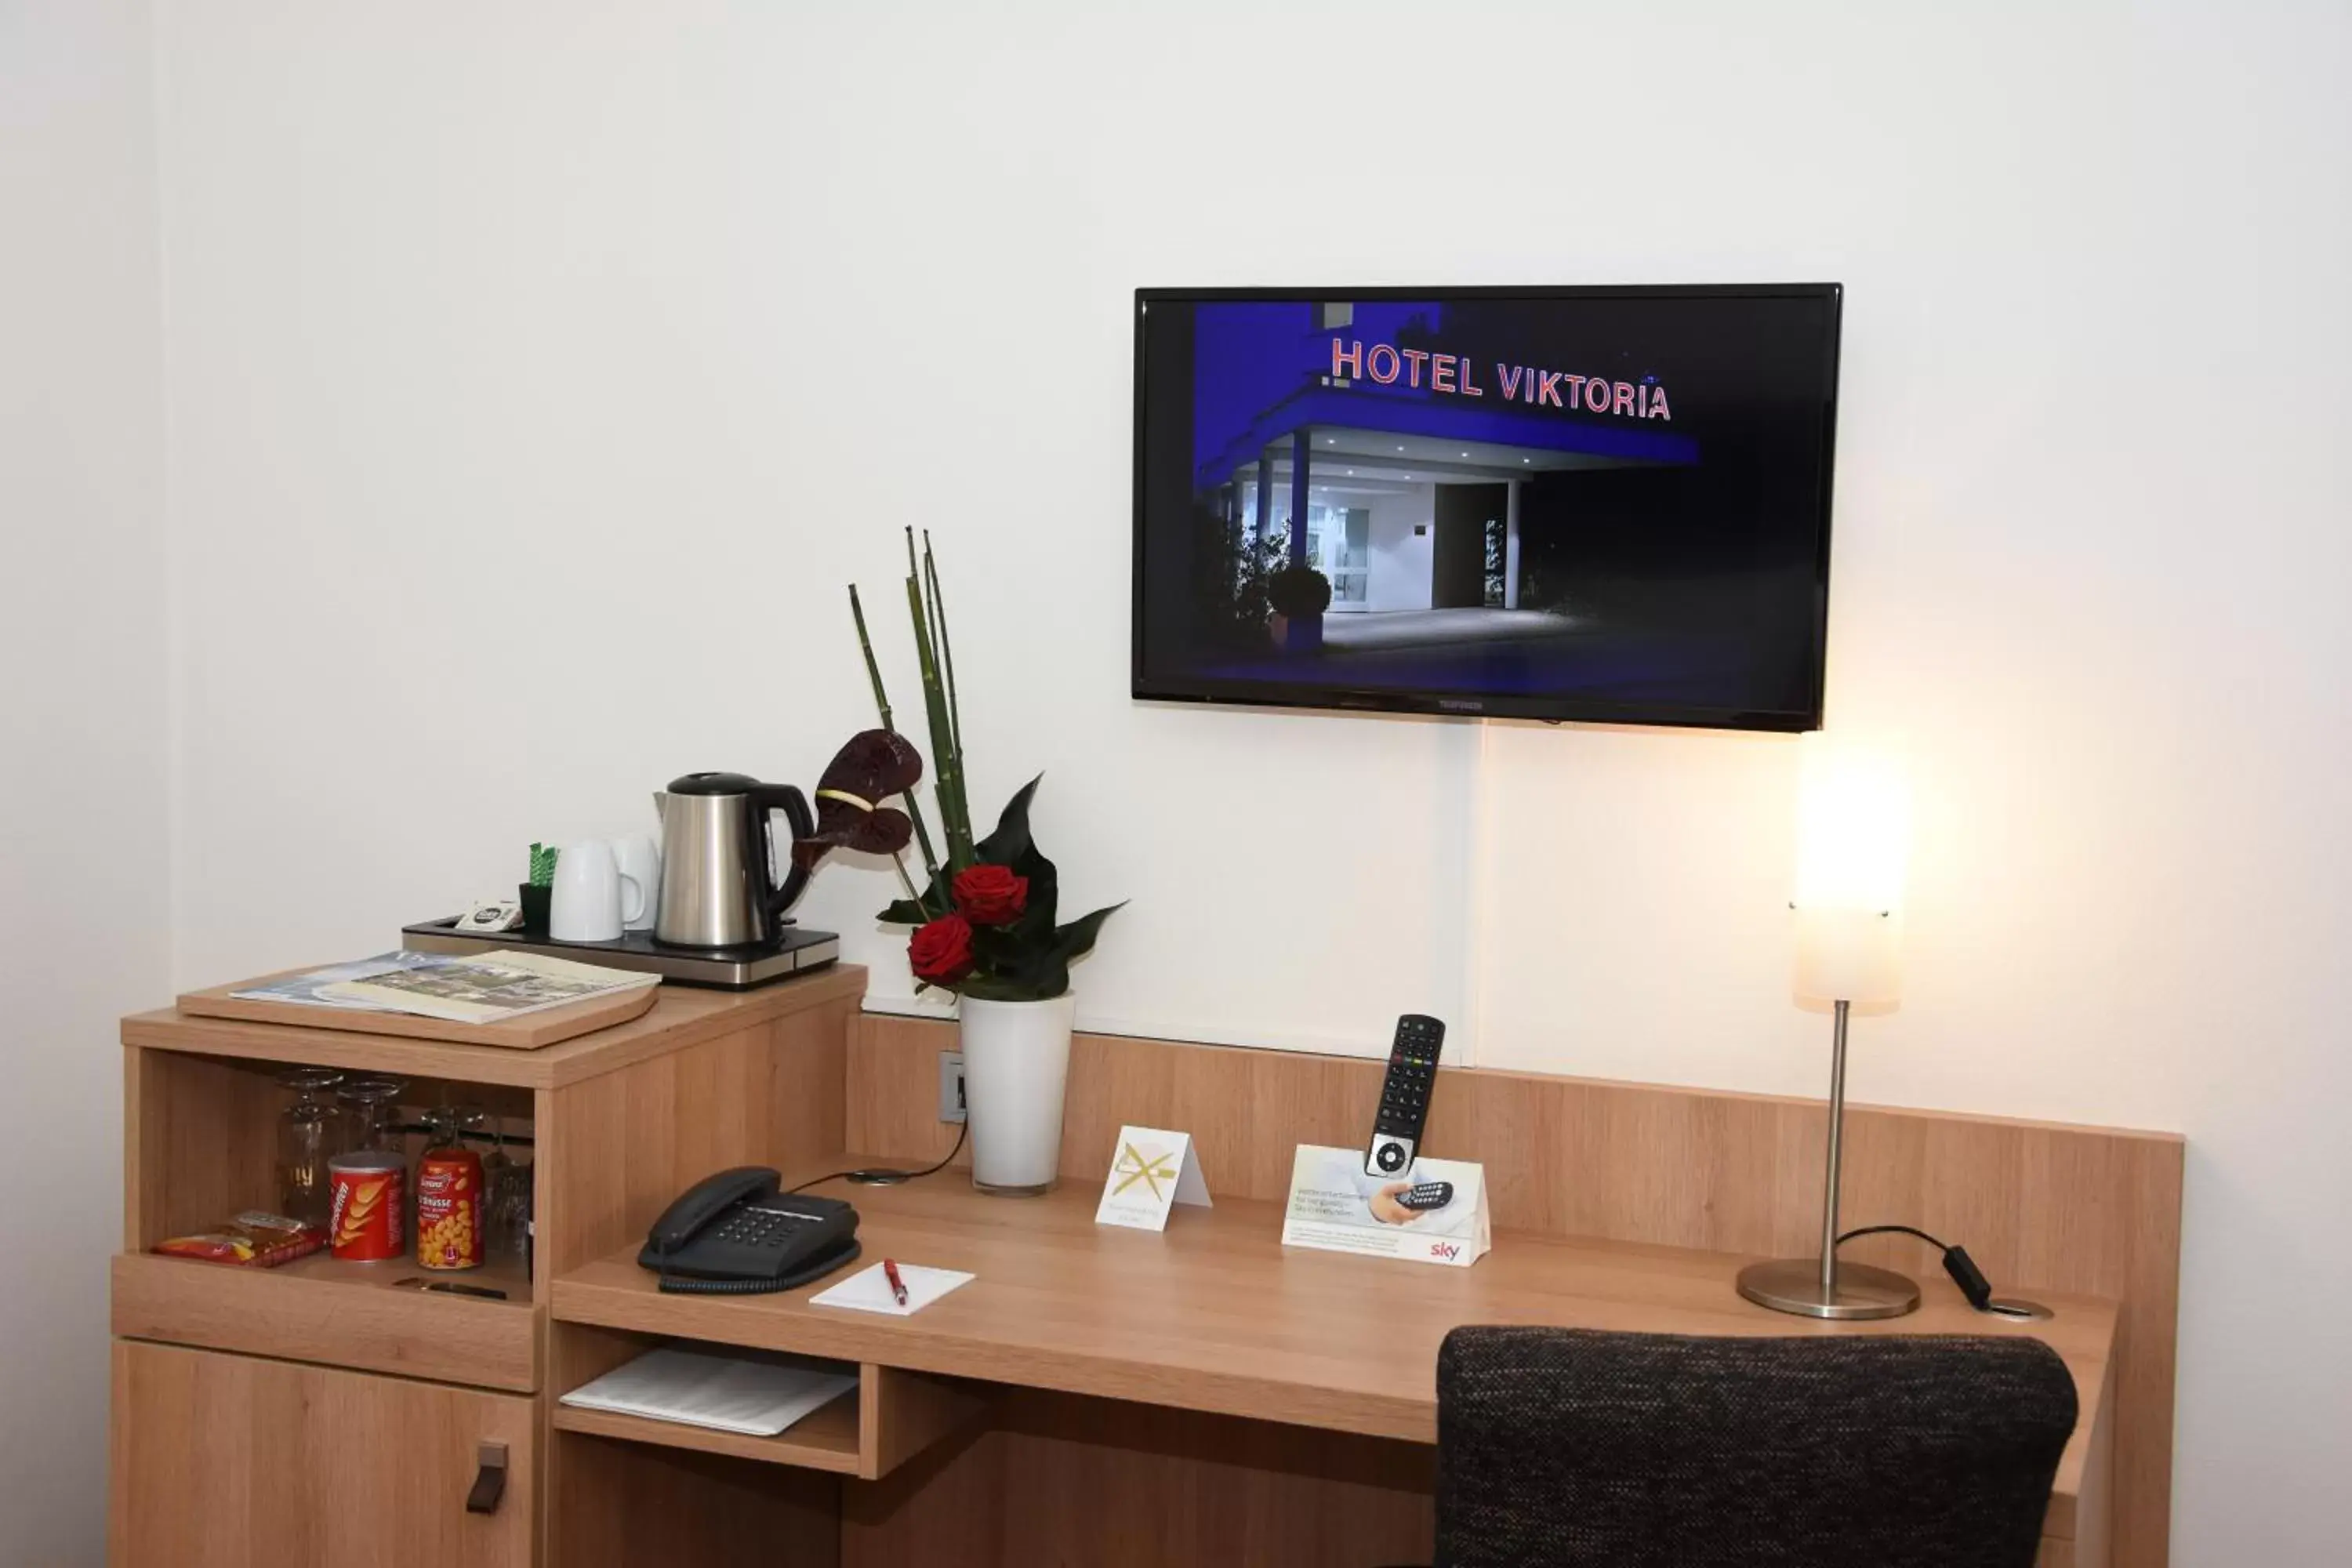 TV and multimedia, TV/Entertainment Center in Concorde Hotel Viktoria